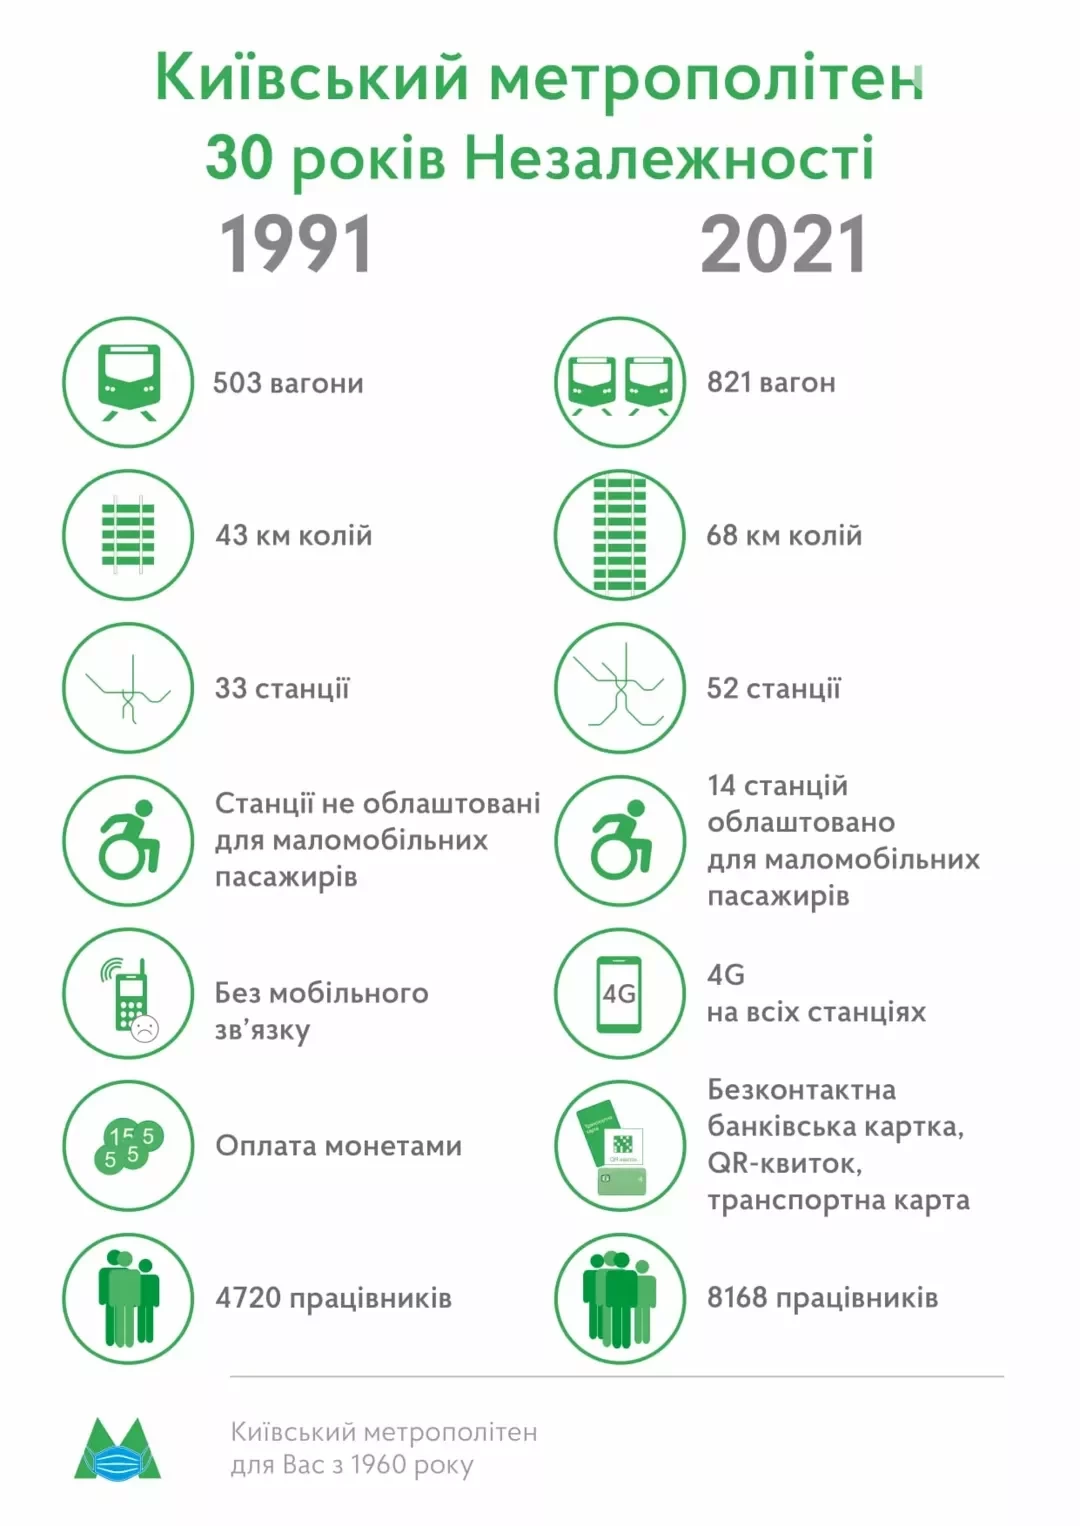 Киев исторический: как изменился столичный метрополитен за 30 лет Независимости страны